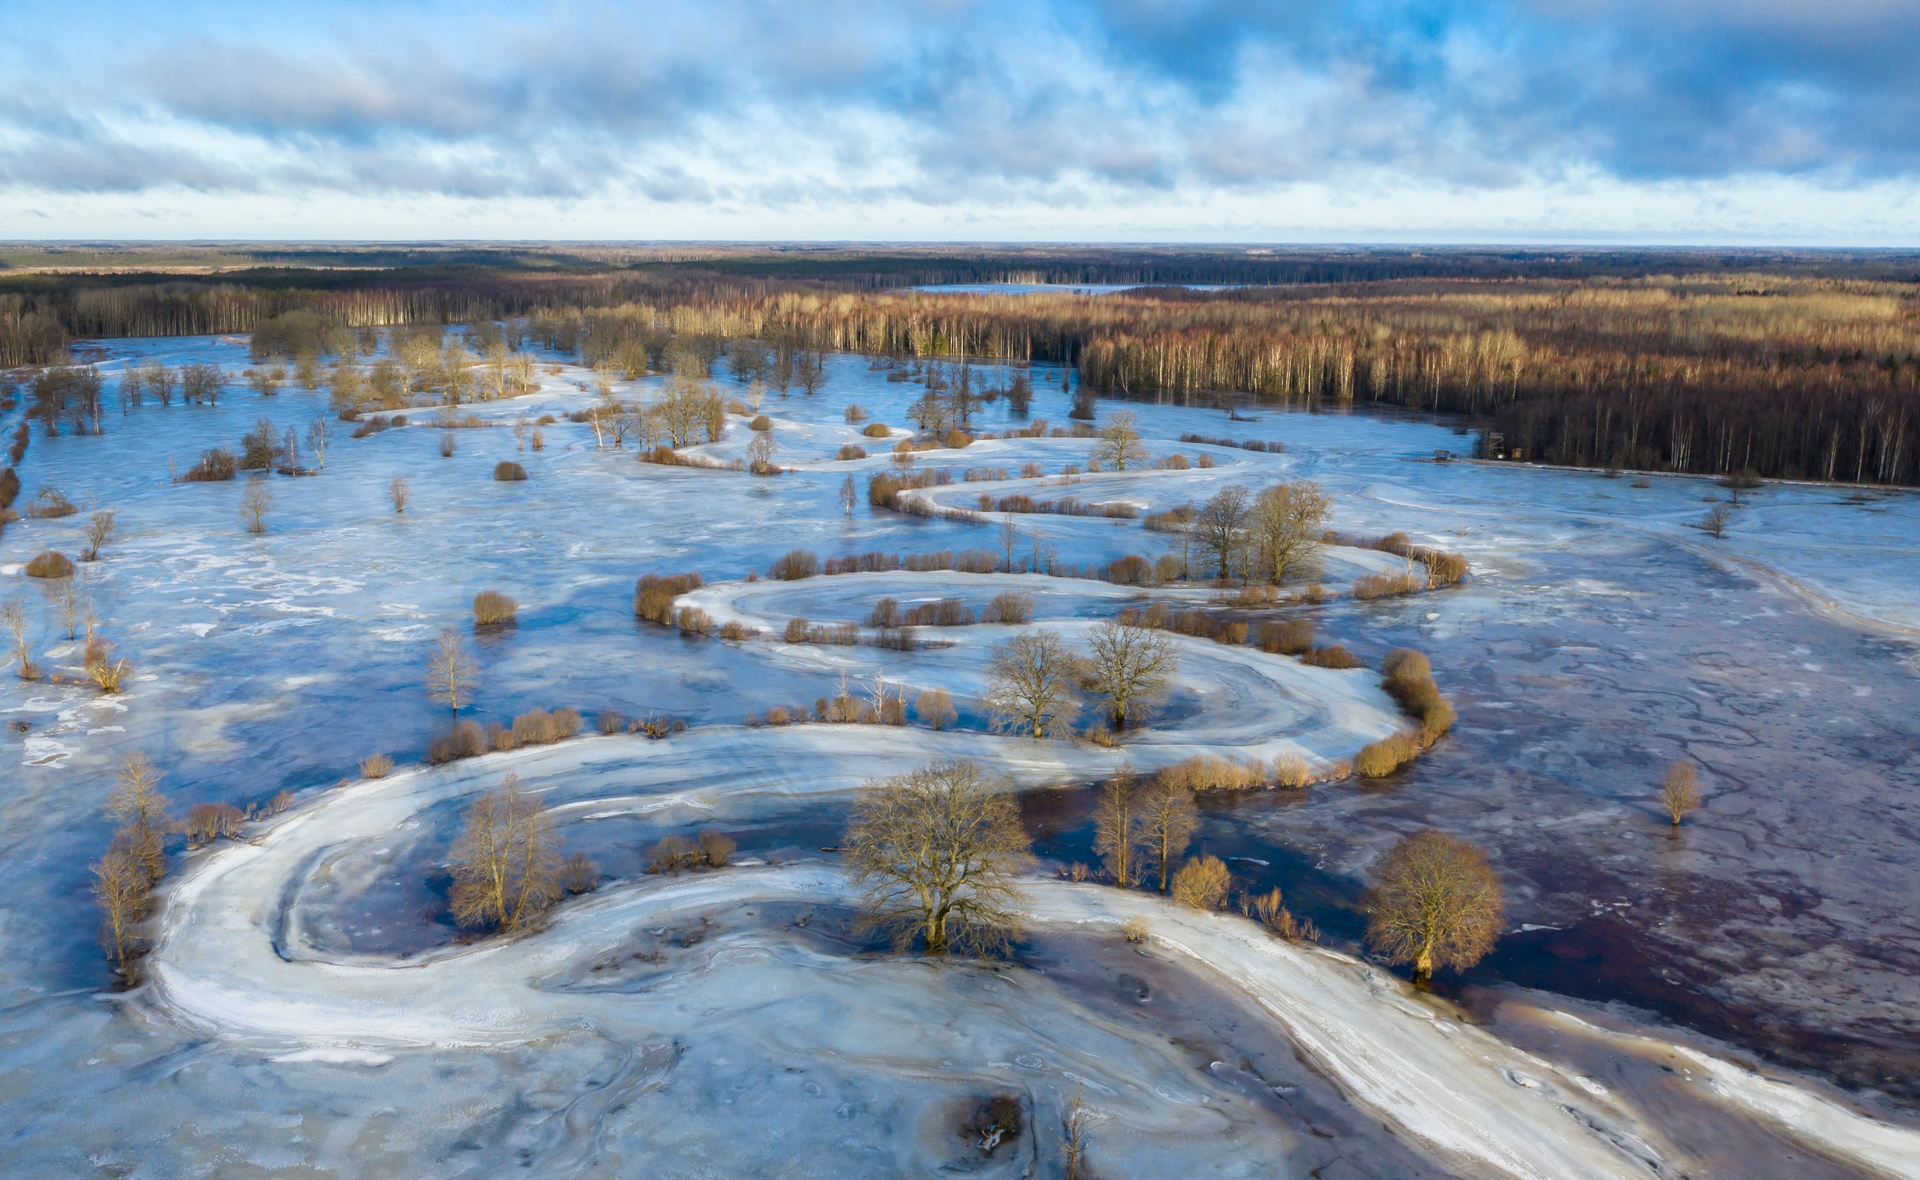 Kevadised üleujutused ehk viies aastaaeg – Soomaa ja teised paigad